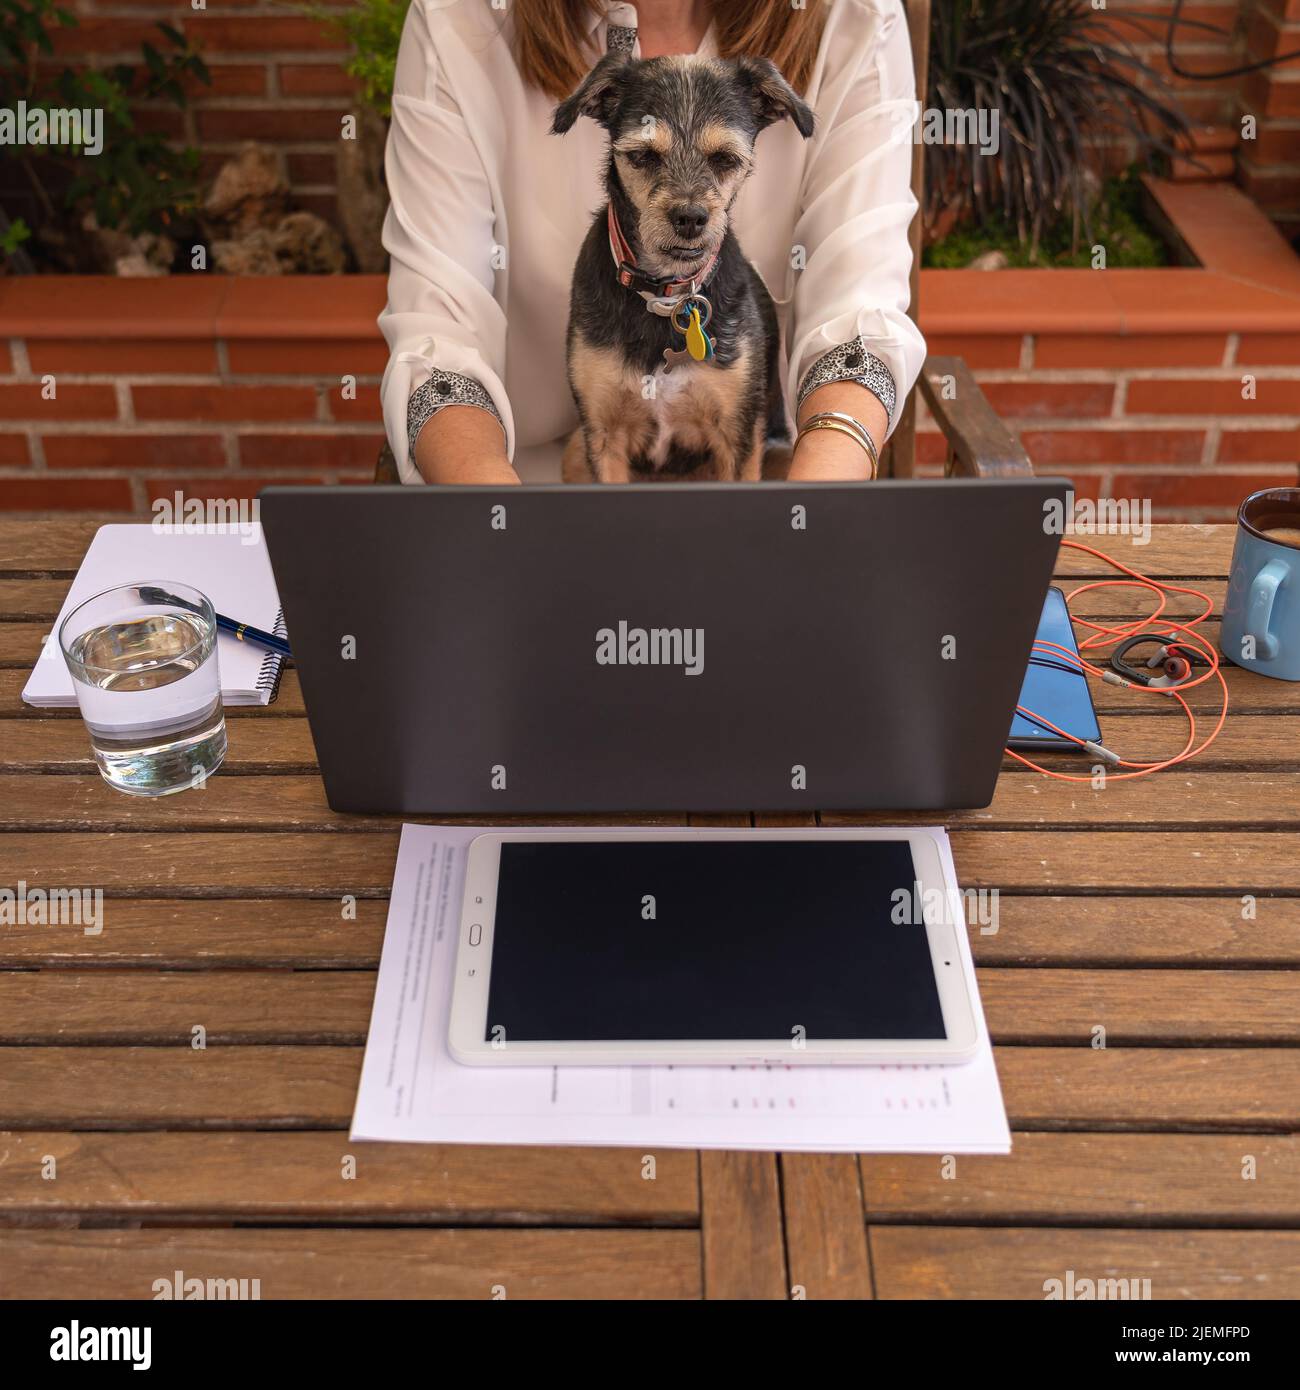 Une femme qui télétravailleur à la maison avec son chien regardant l'écran d'un ordinateur portable. Banque D'Images